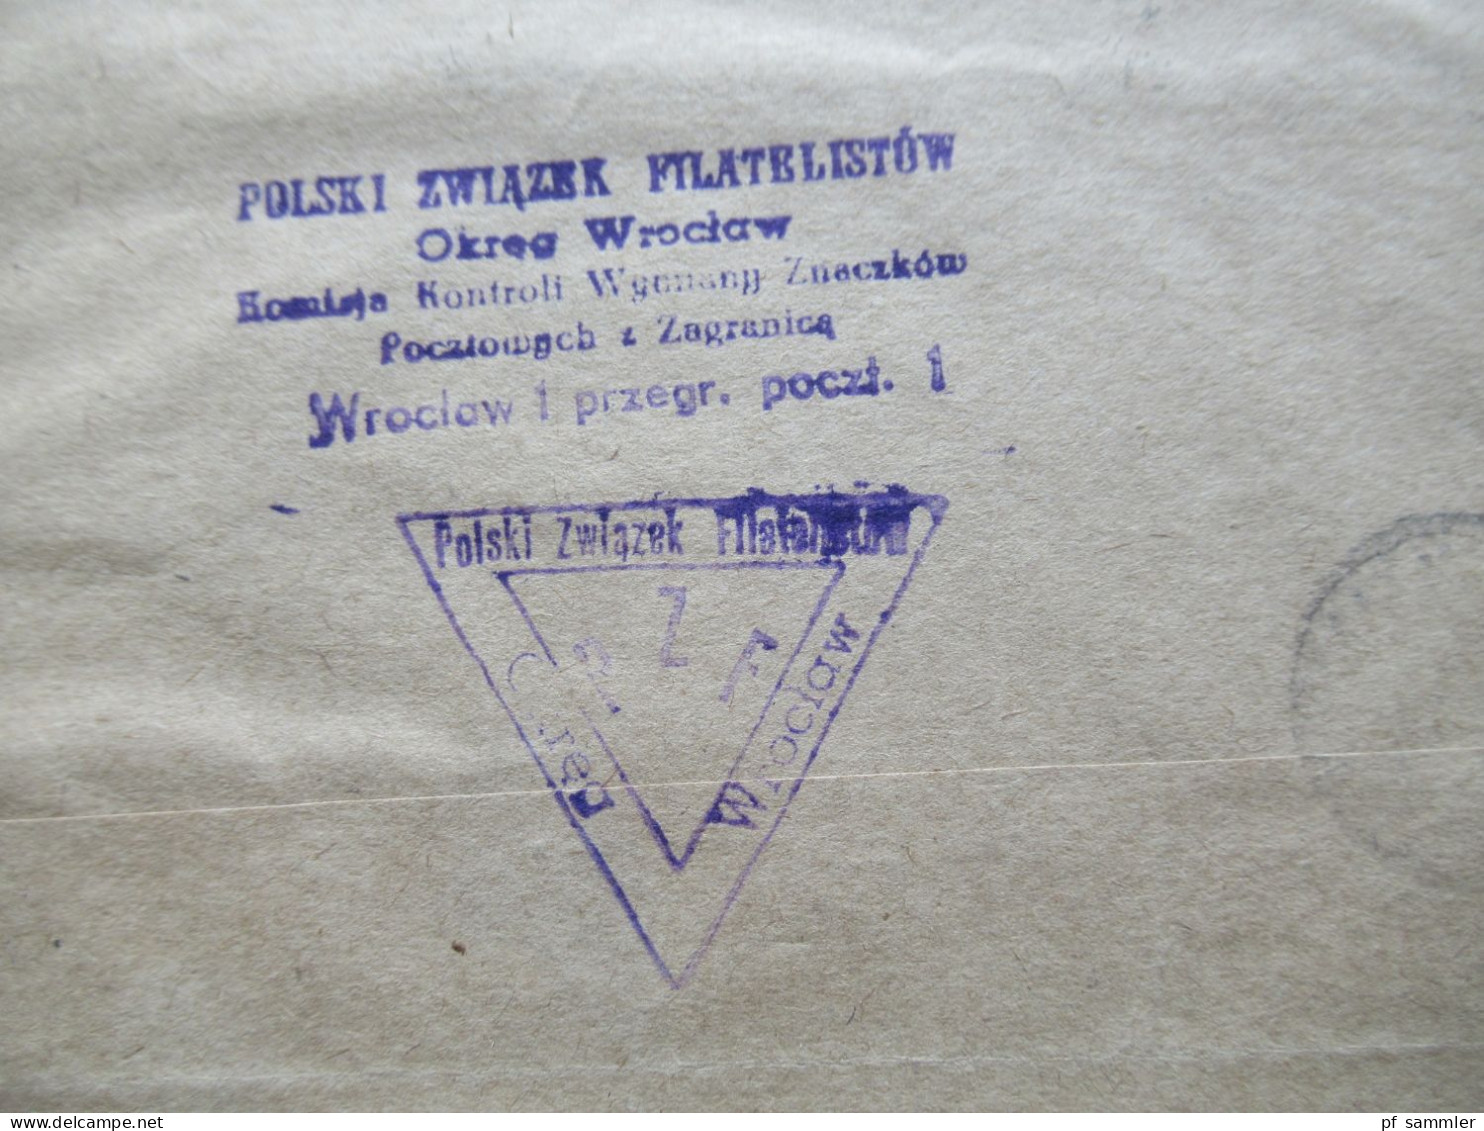 Polen um 1960er Jahre! 16 Auslandsbelege mit Buntfrankaturen / Einschreiben mit int. R-Zetteln und alle mit Dreieckstemp